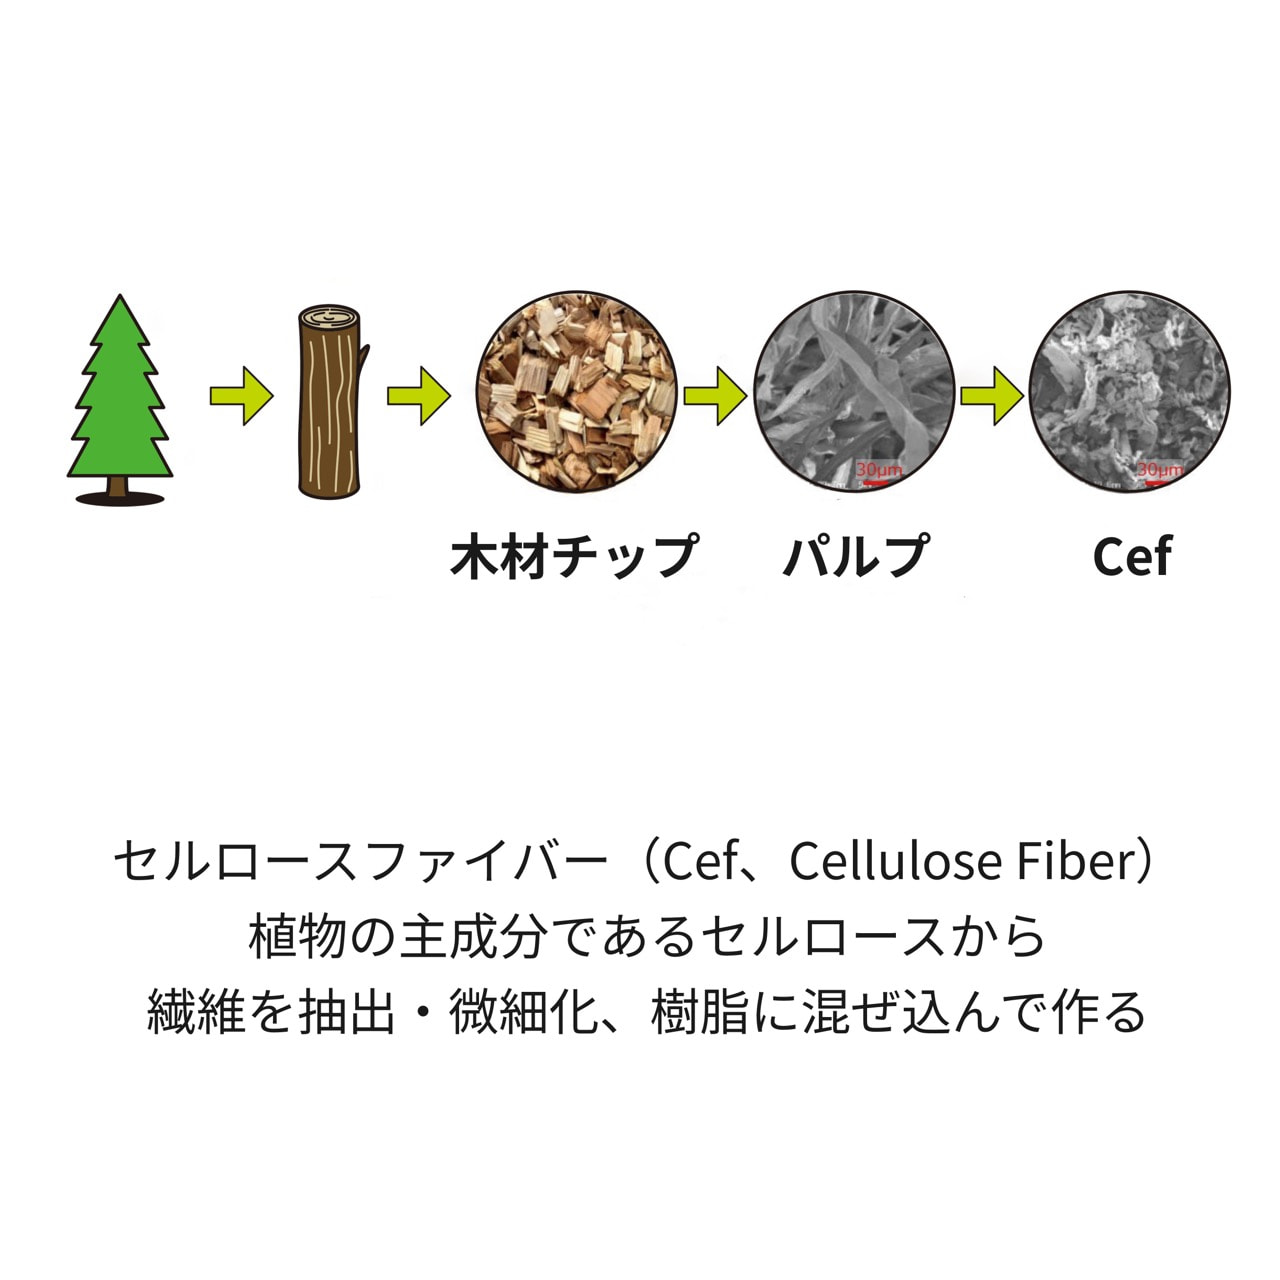 木材チップ パルプ Cef セルロースファイバー（Cef、Cellulose Fiber）植物の主成分であるセルロースから遷移を抽出・微細化、樹脂に混ぜ込んで作る